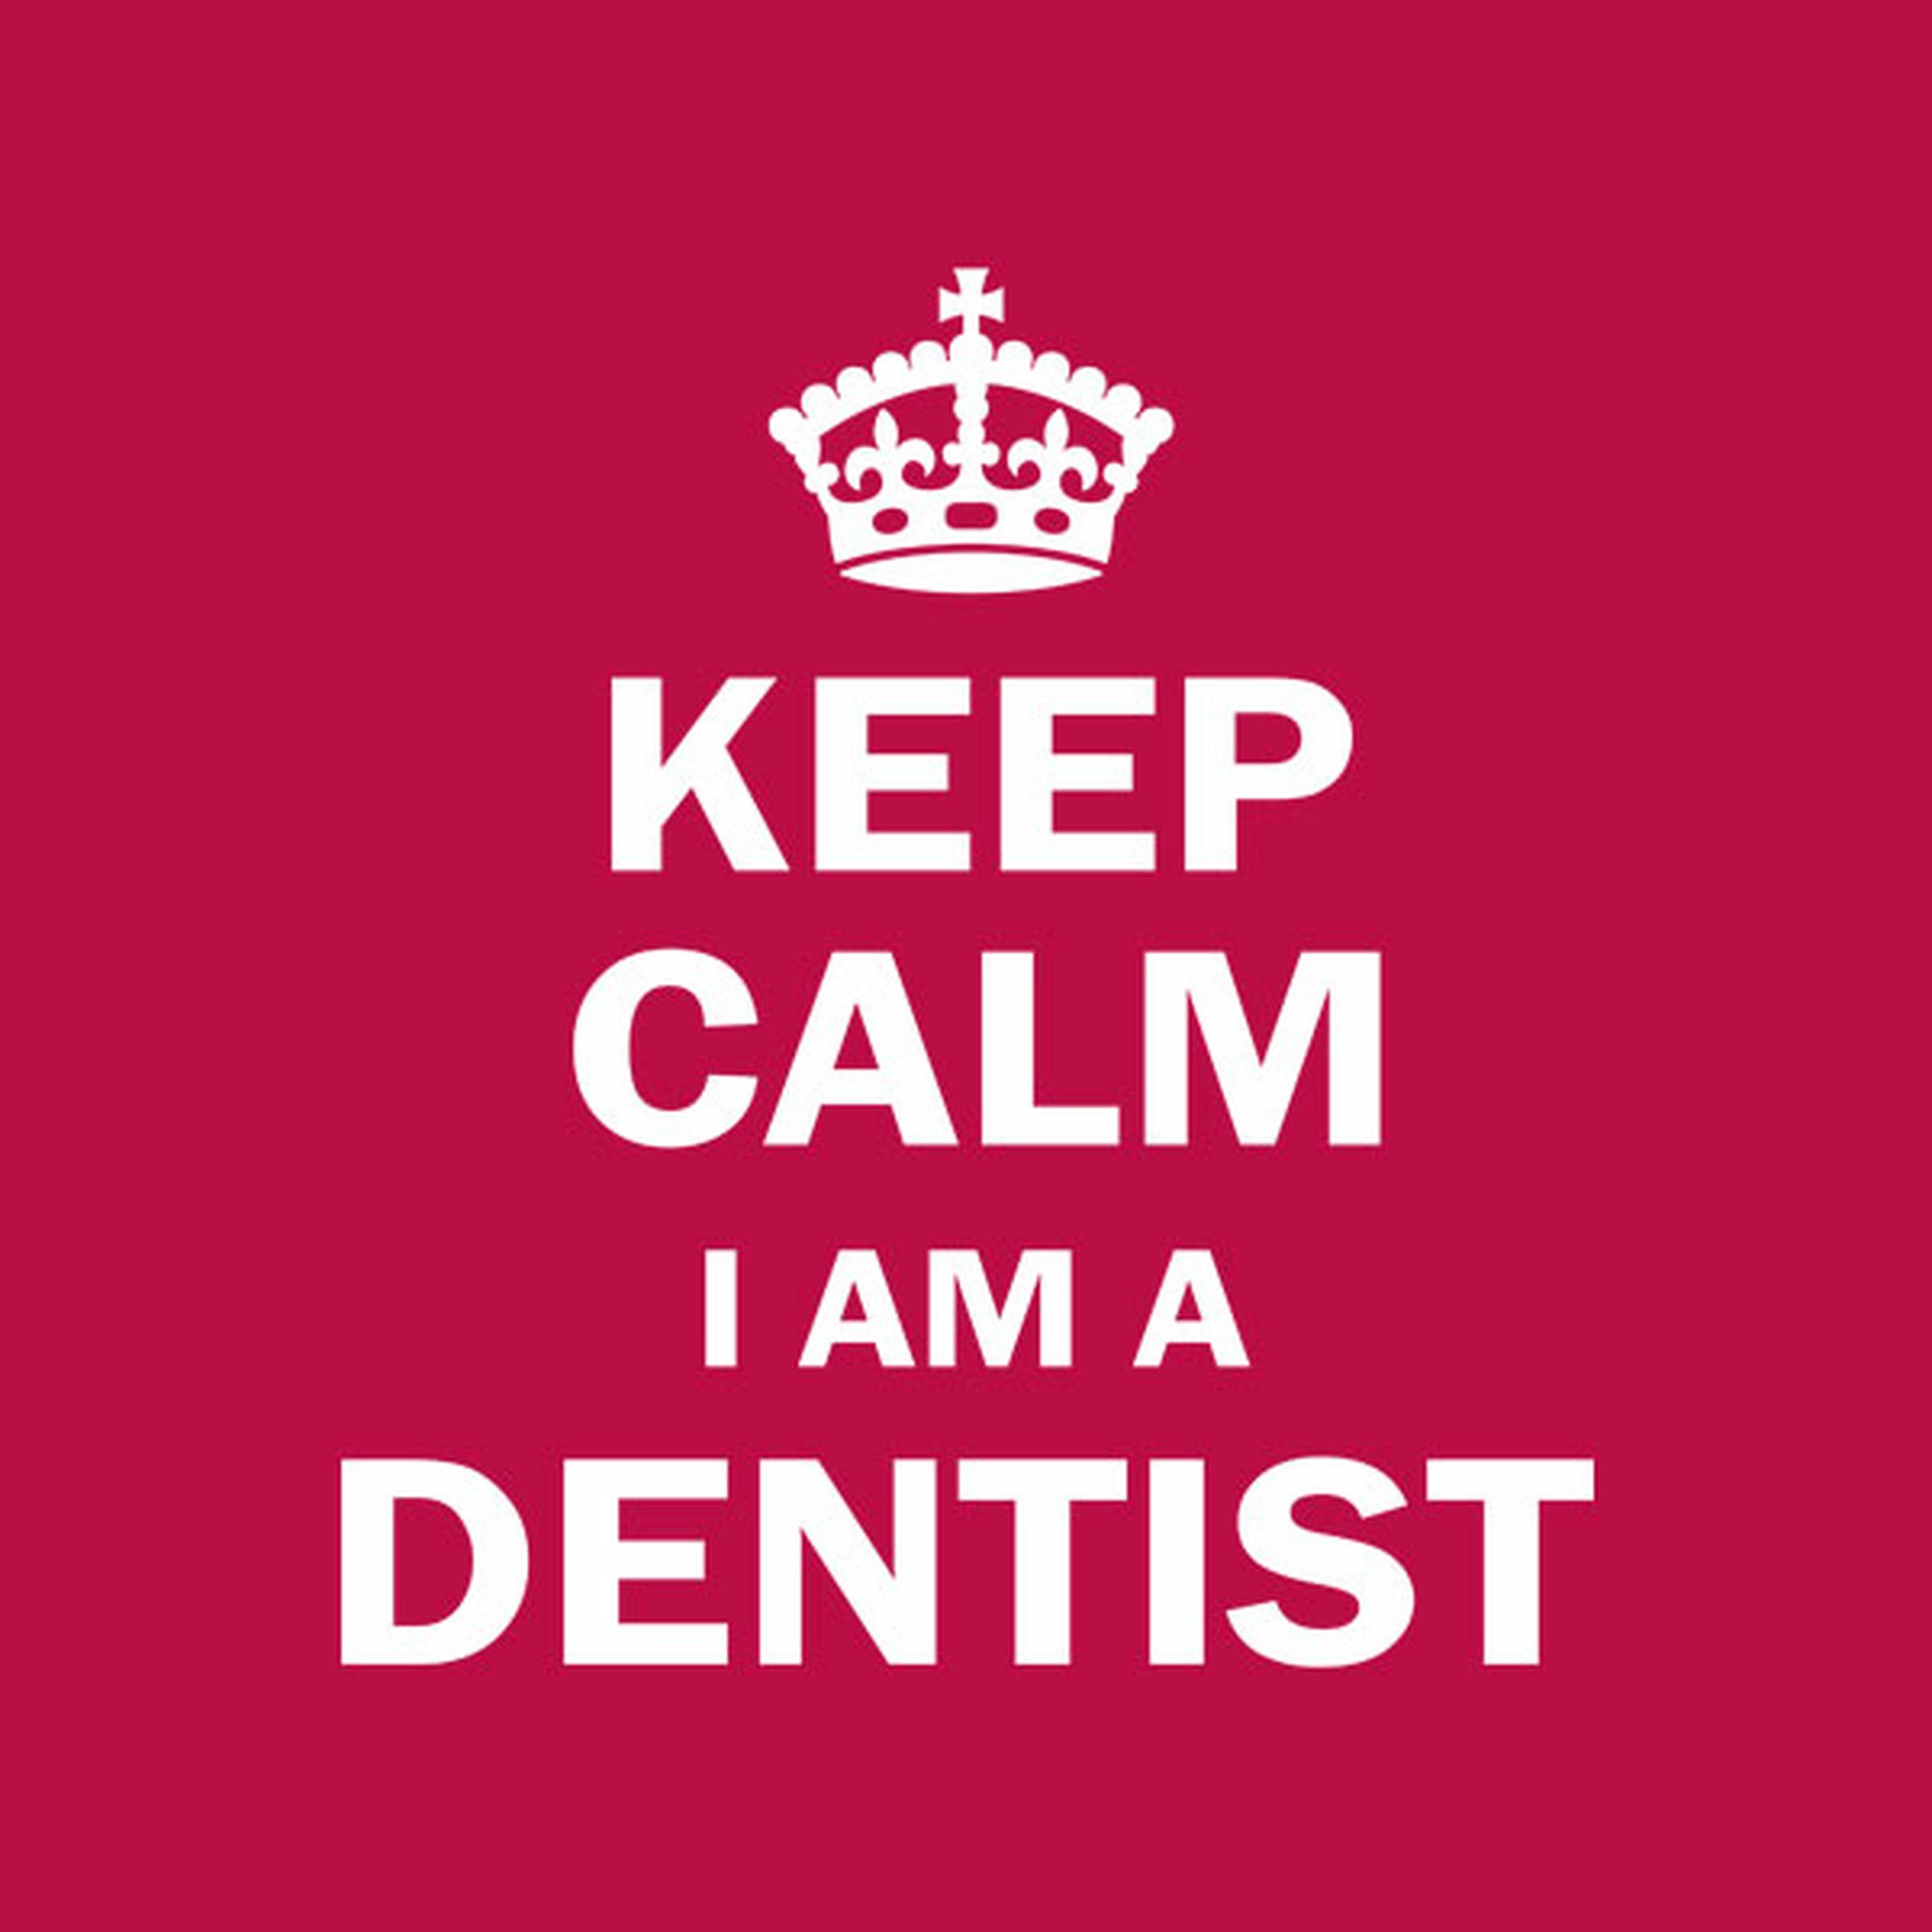 Keep calm. I am a dentist T-shirt